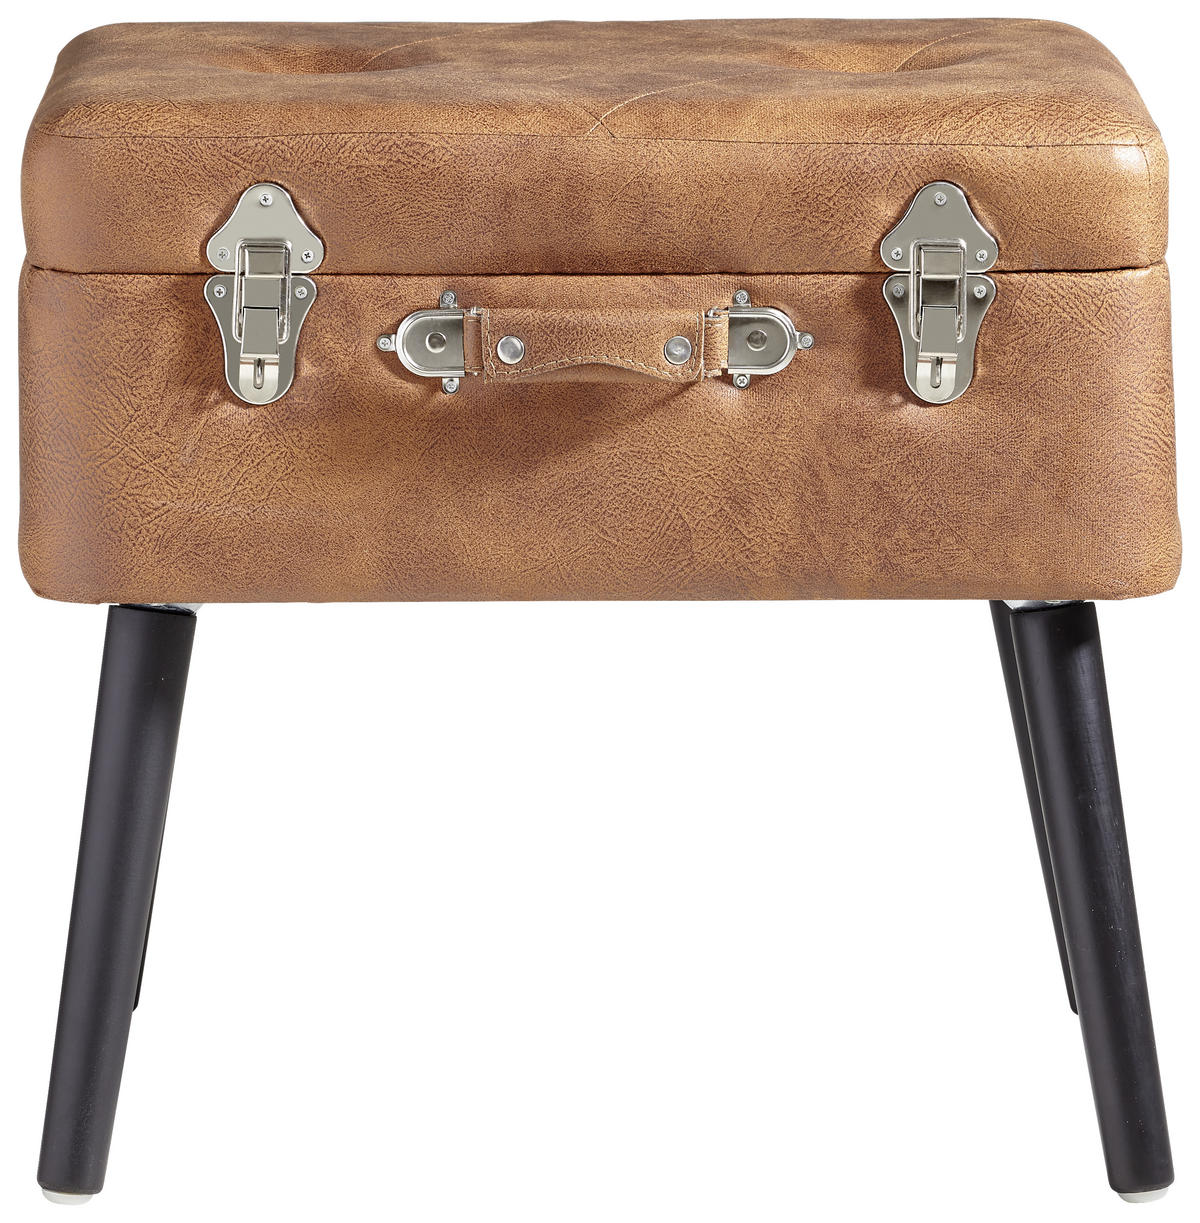 Hocker mit Stauraum im Koffer-Design online kaufen